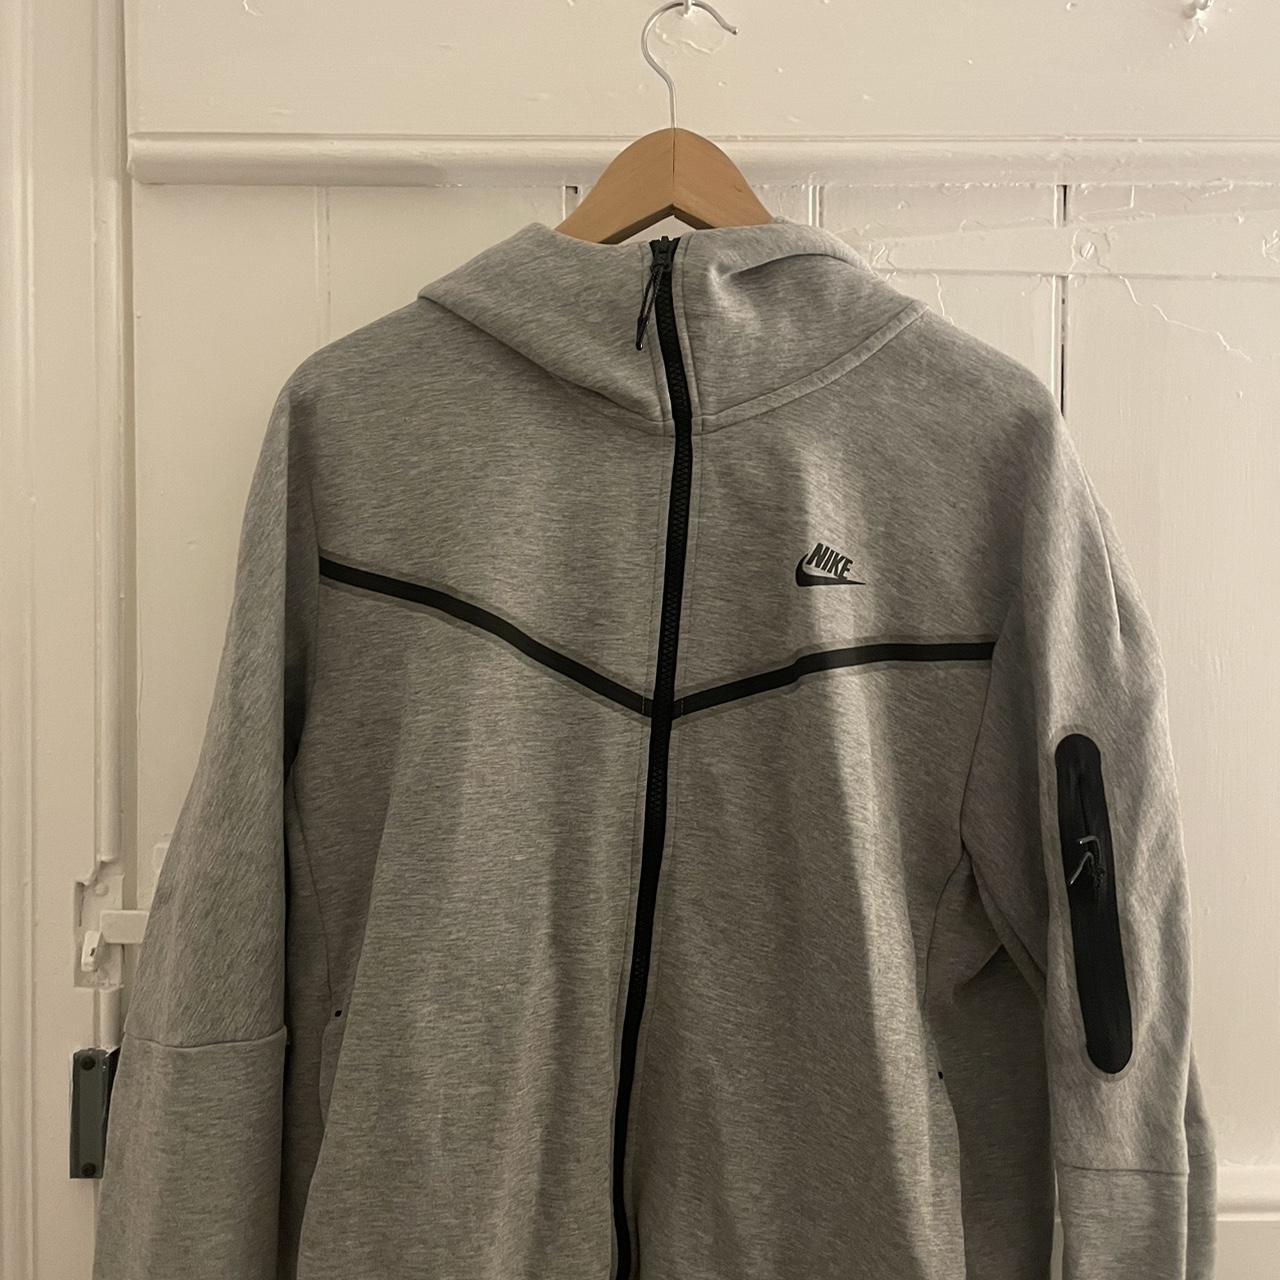 Grey Nike Tech fleece - Depop